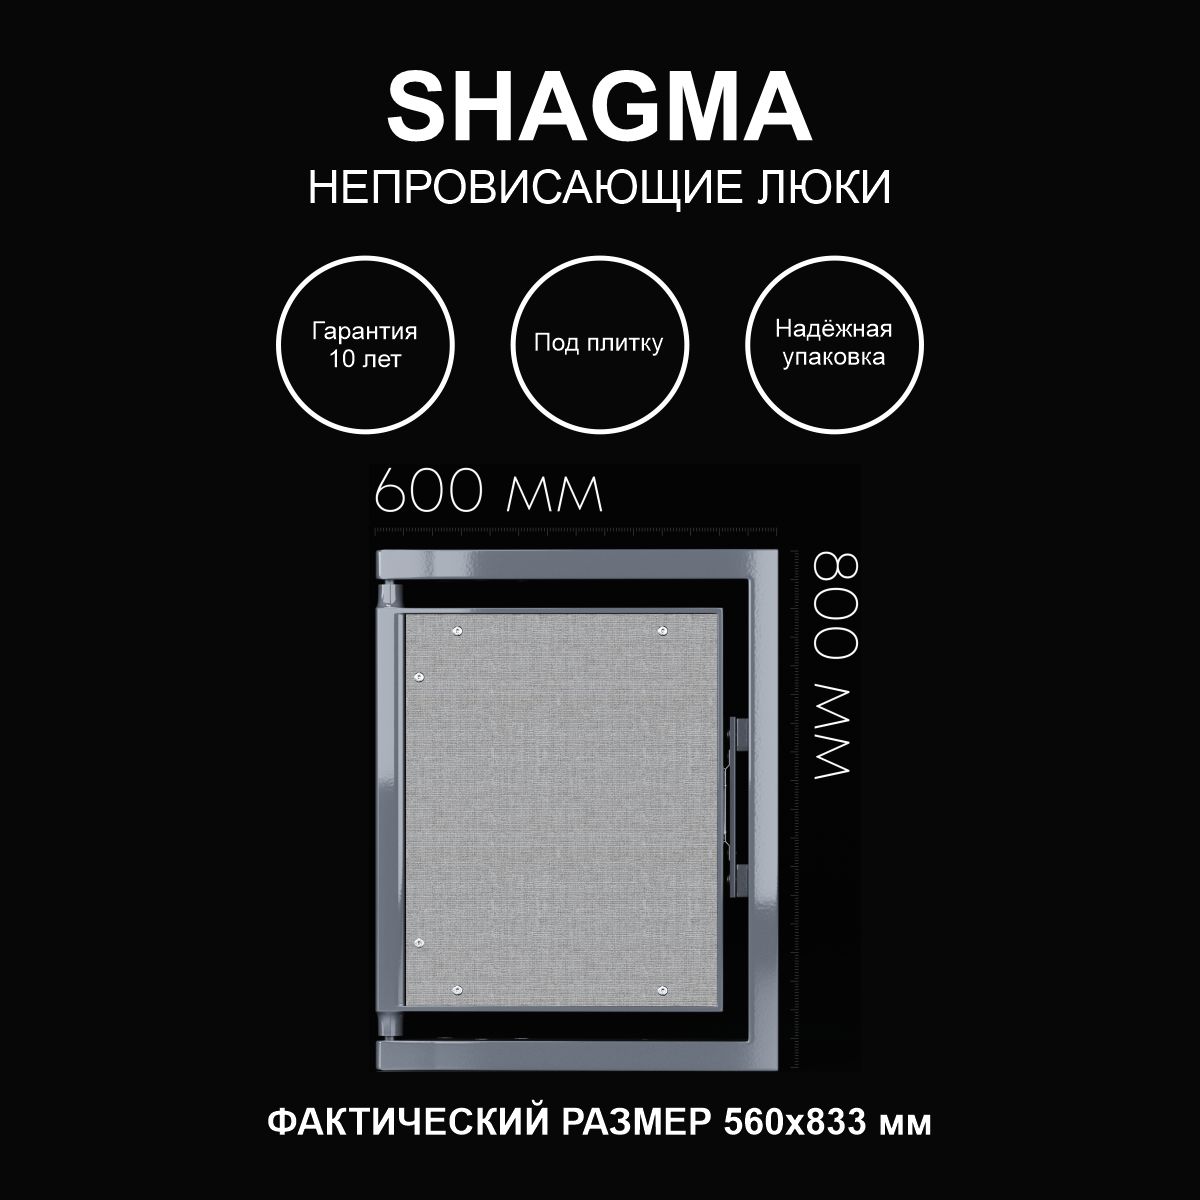 Люк SHAGMA ревизионный под плитку сантехнический 600х800 мм